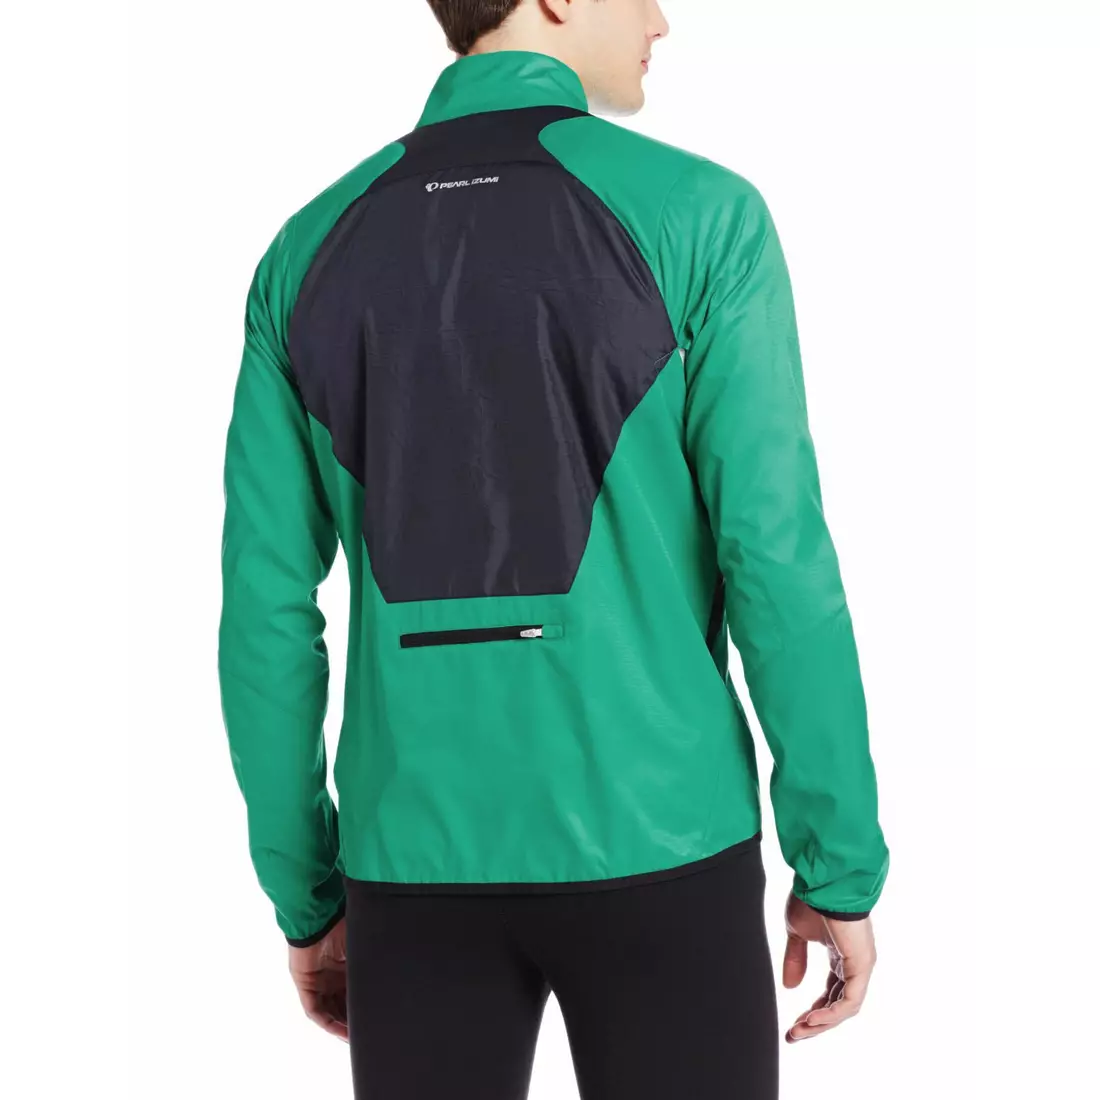 PEARL IZUMI FLY 12131402-4DF - jachetă alergare bărbați, culoare: verde